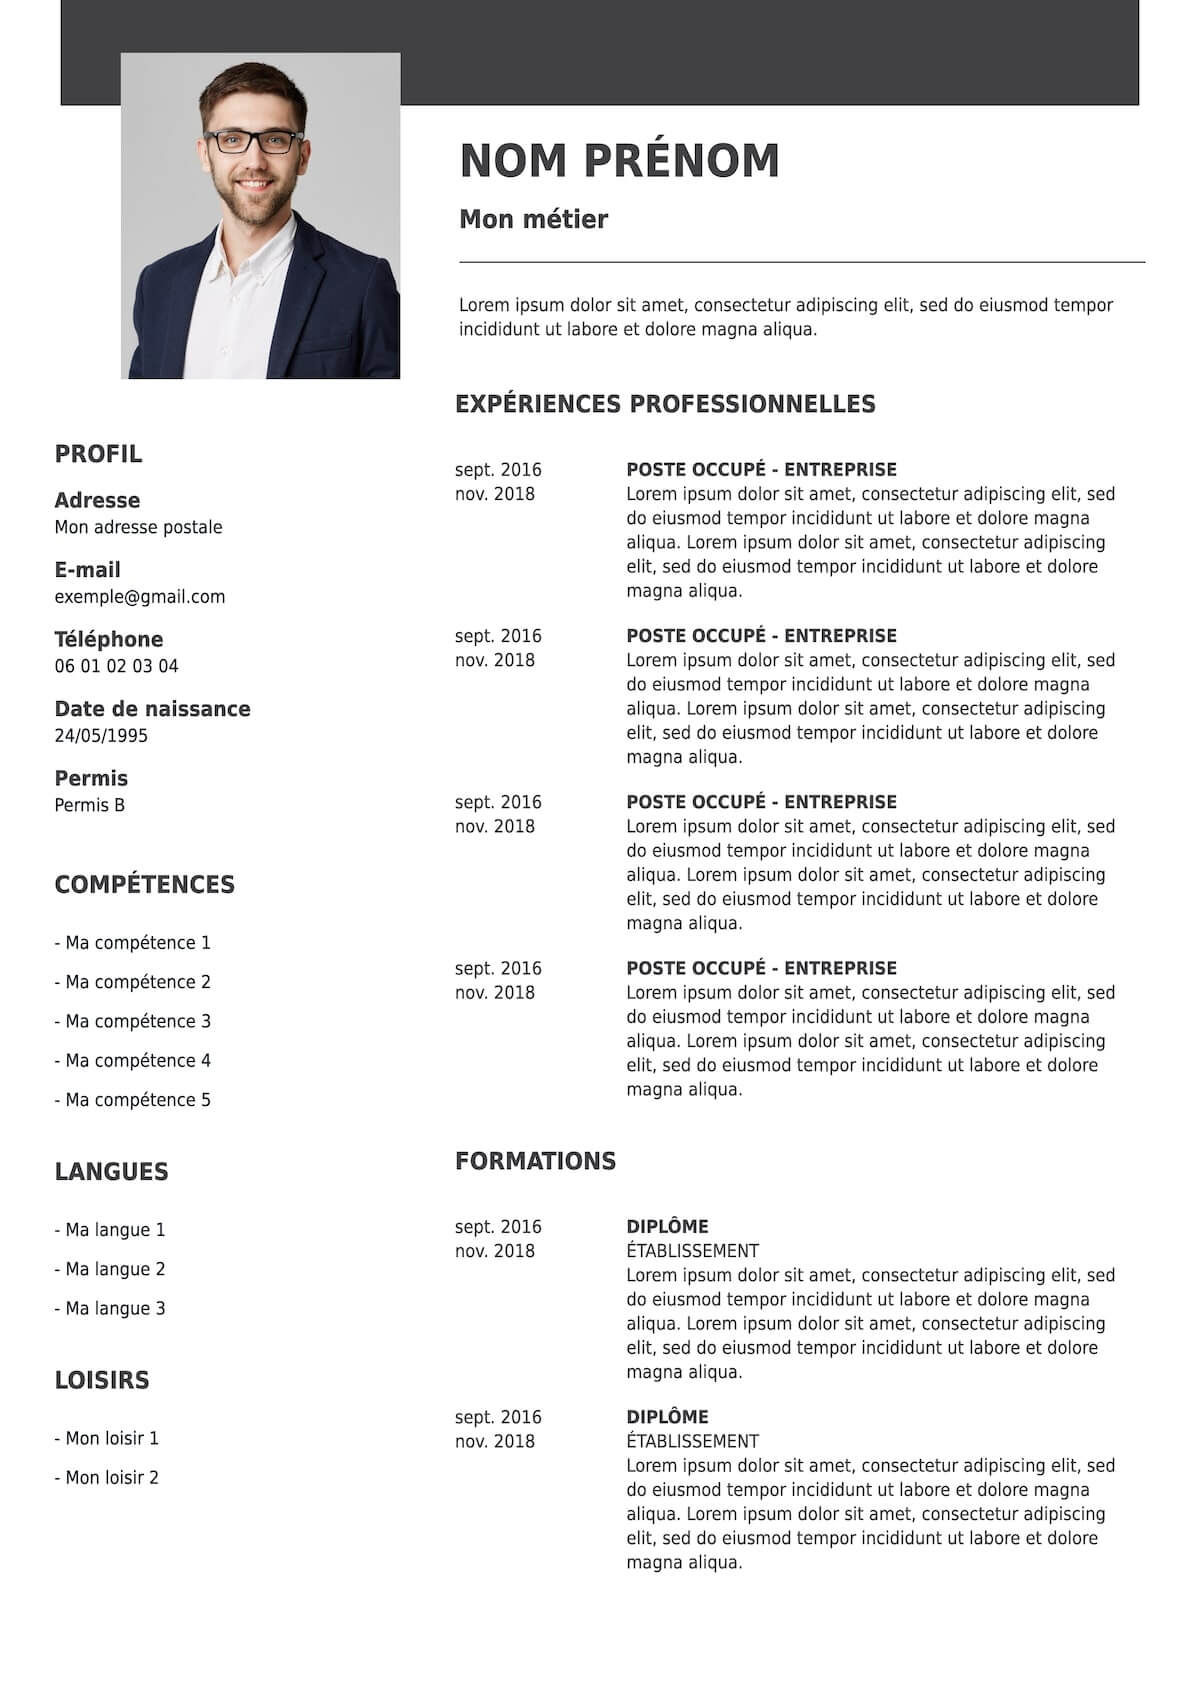 Exemple d'un CV professionnel avec photo